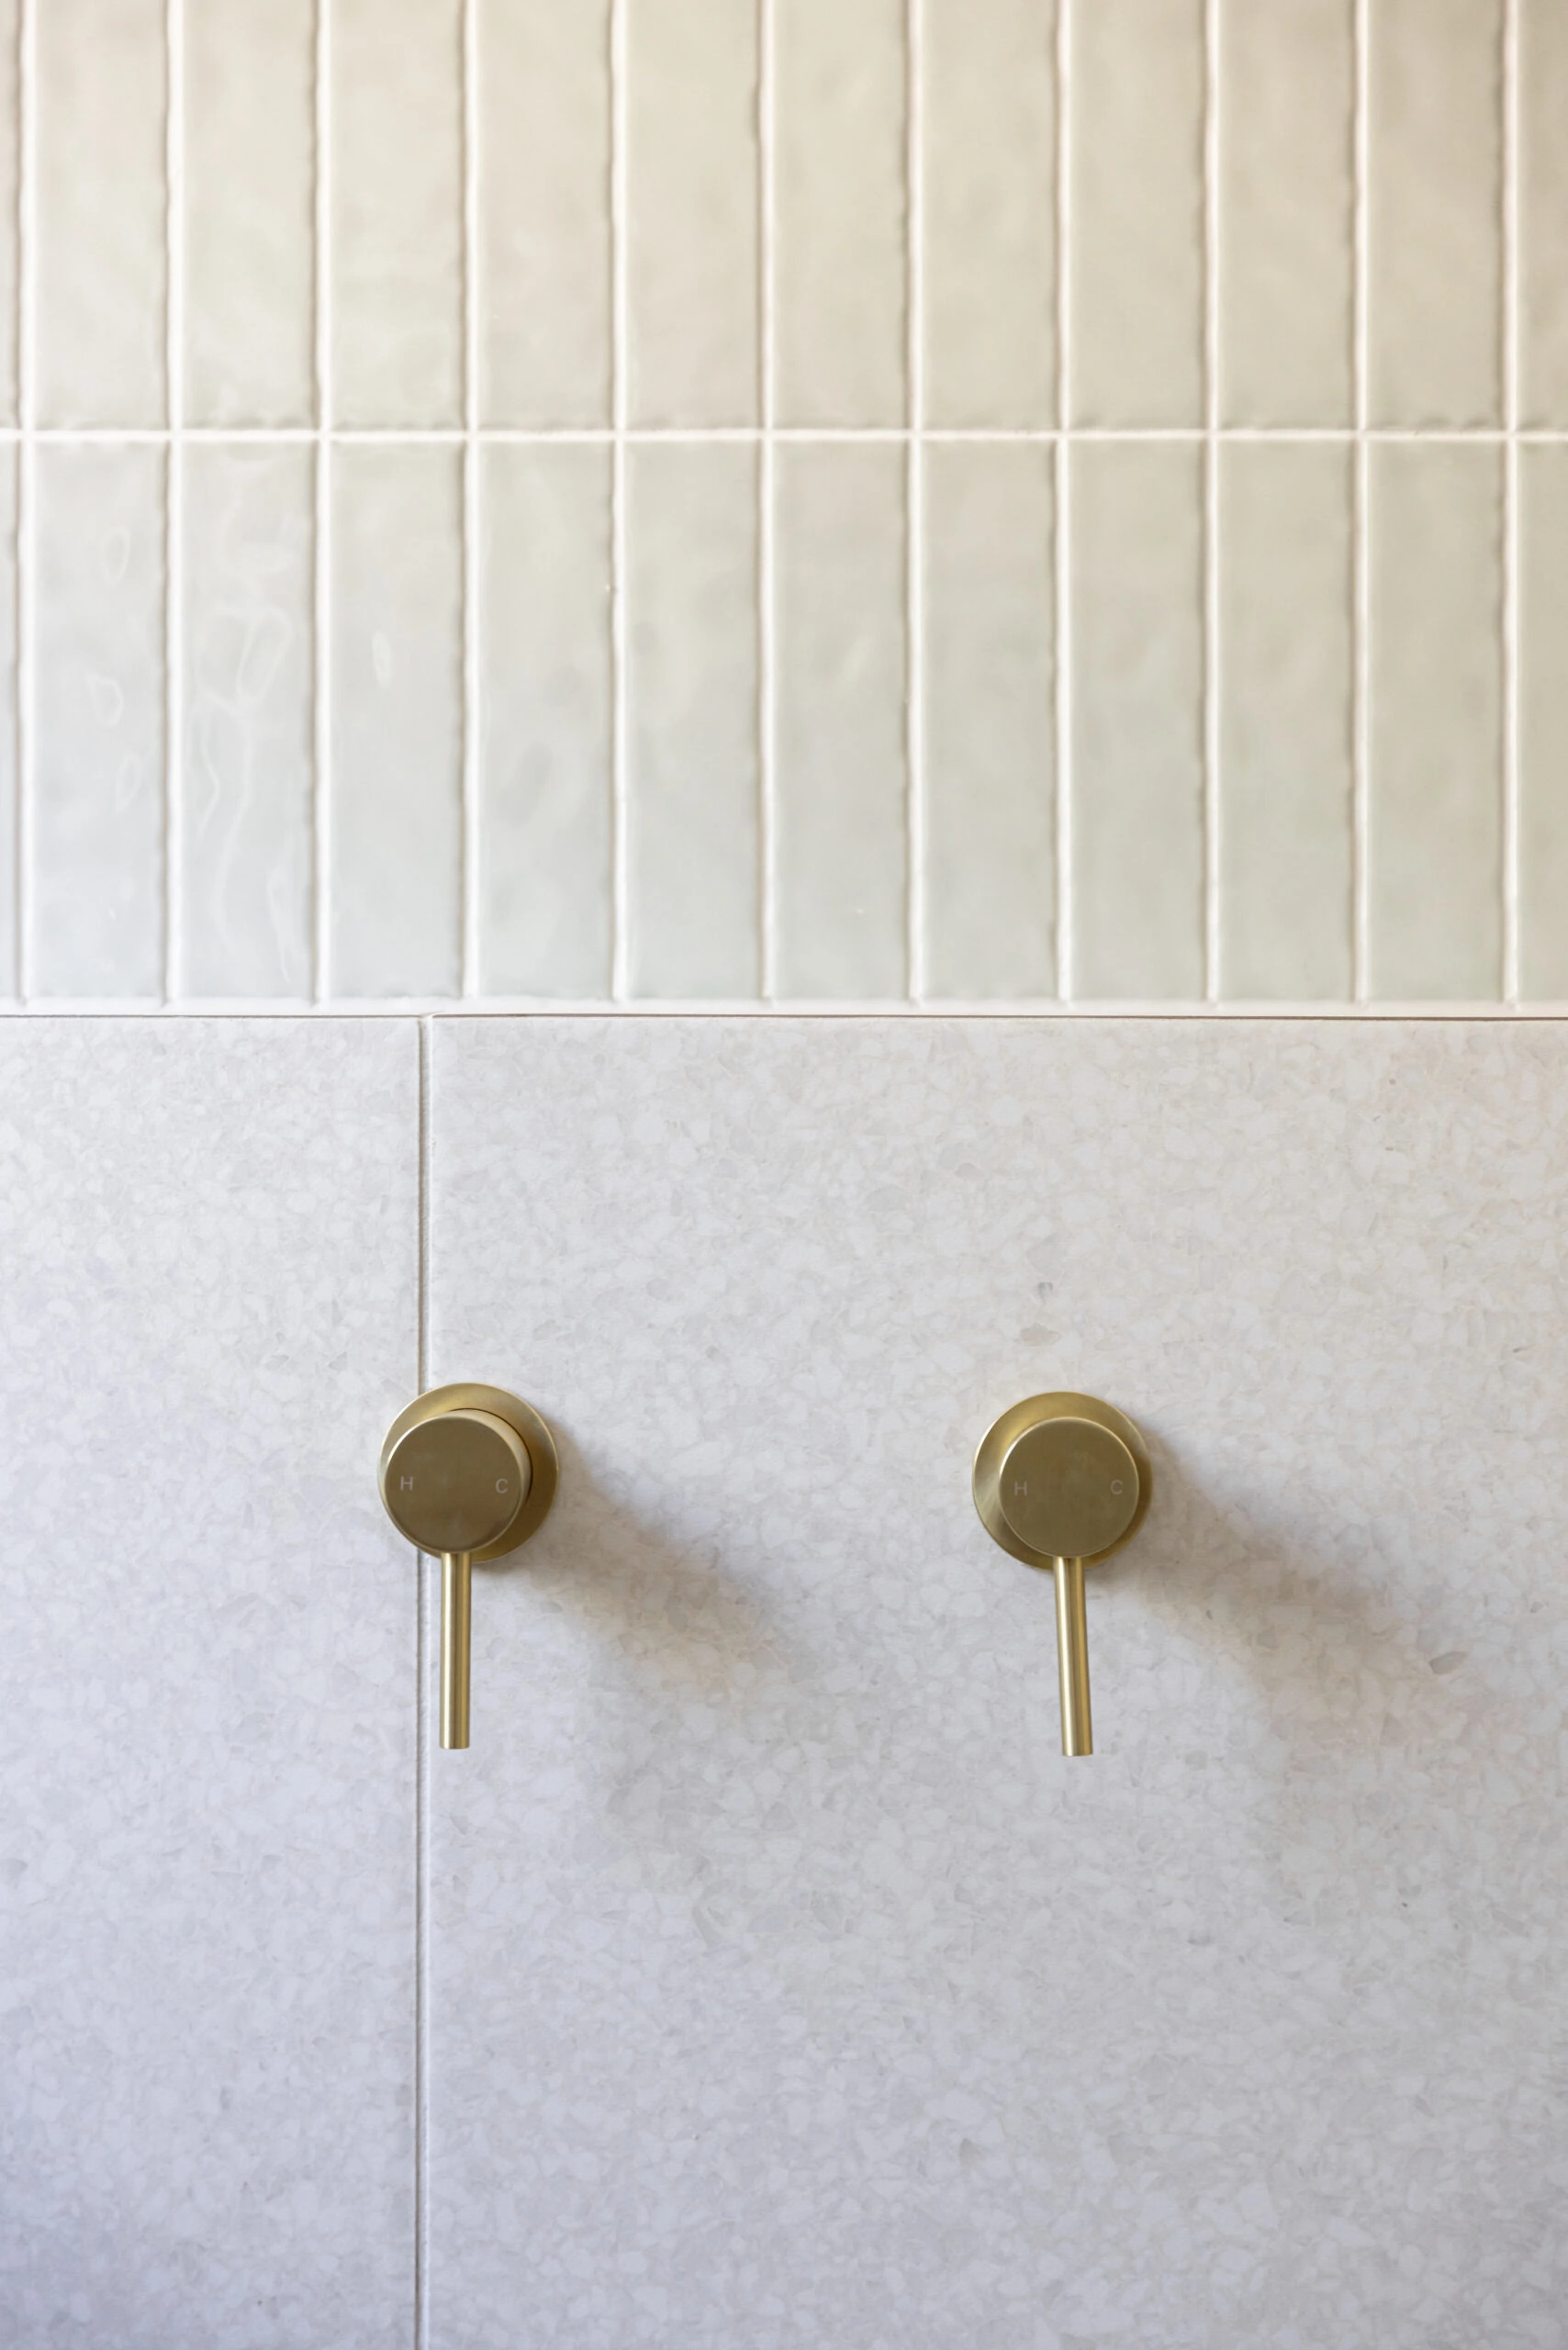 Gold taps on light bathroom tiles